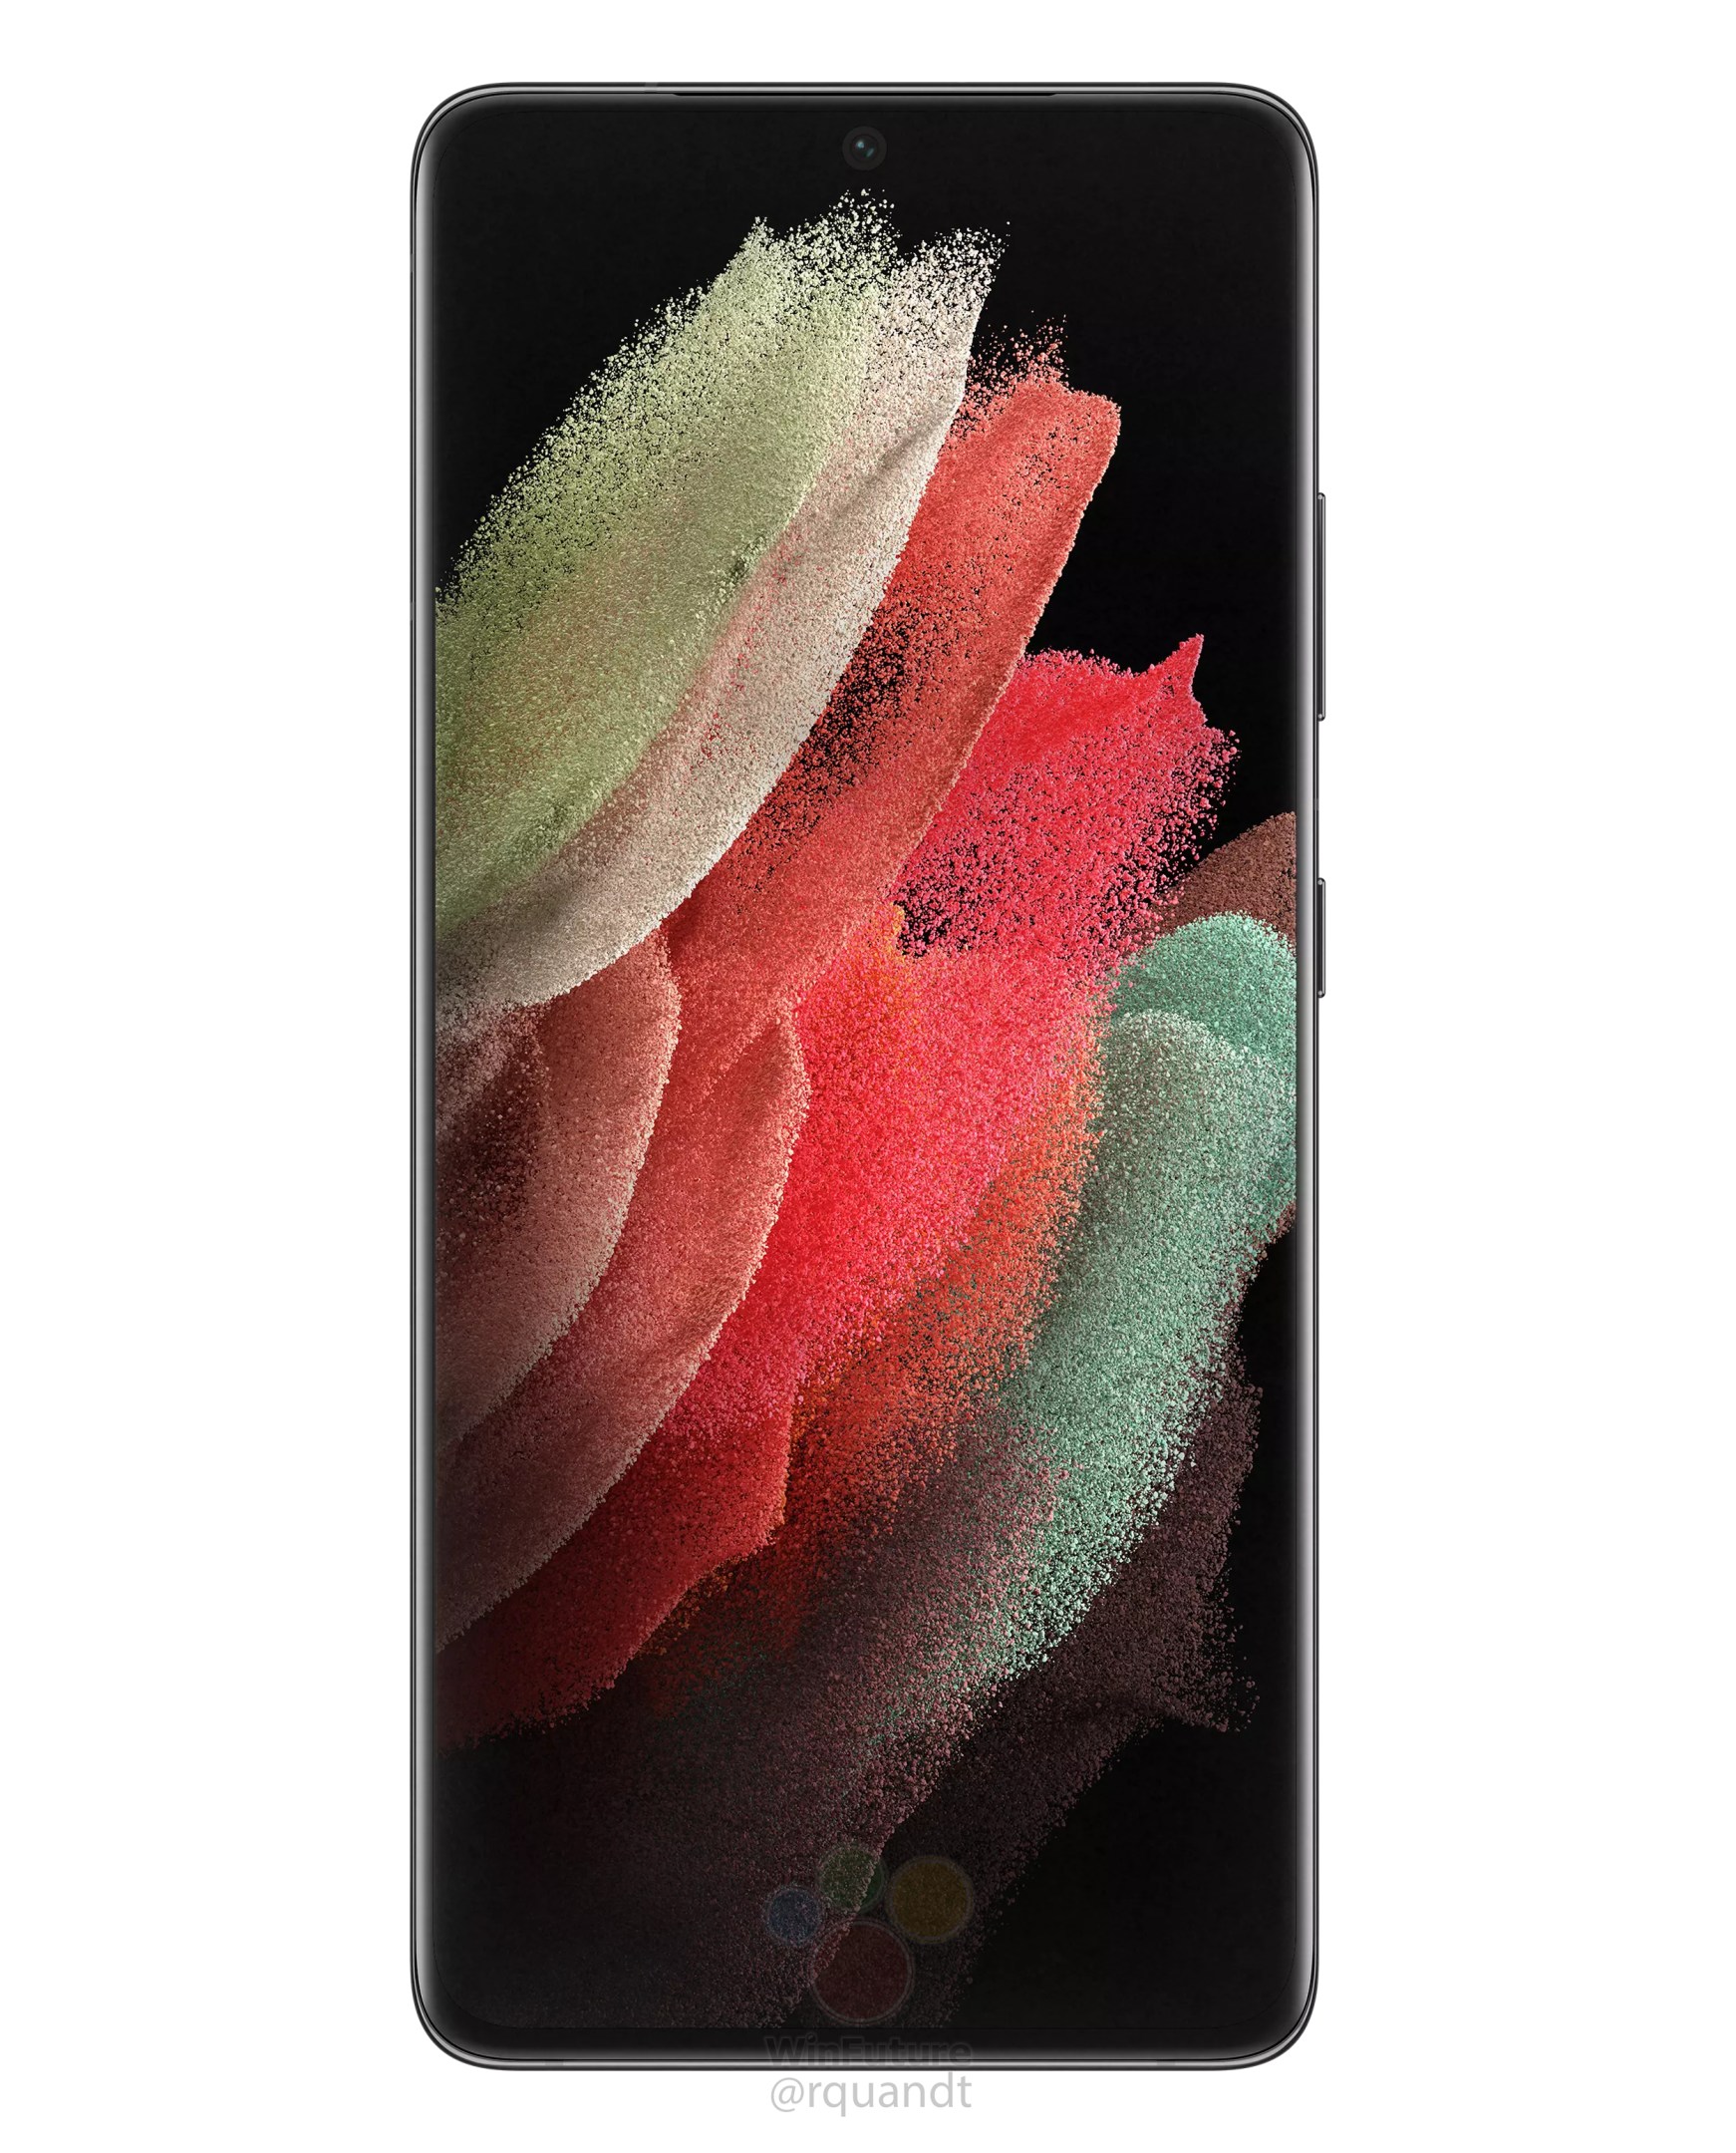 Cùng khám phá bảng thông số kỹ thuật của Galaxy S21 Ultra - một siêu phẩm đến từ Samsung với tính năng vượt trội và thiết kế ấn tượng. Tại đây, bạn sẽ tìm hiểu thêm về màn hình AMOLED độ phân giải cao, camera đa trọng lượng và vi xử lý mạnh mẽ của chiếc điện thoại này.